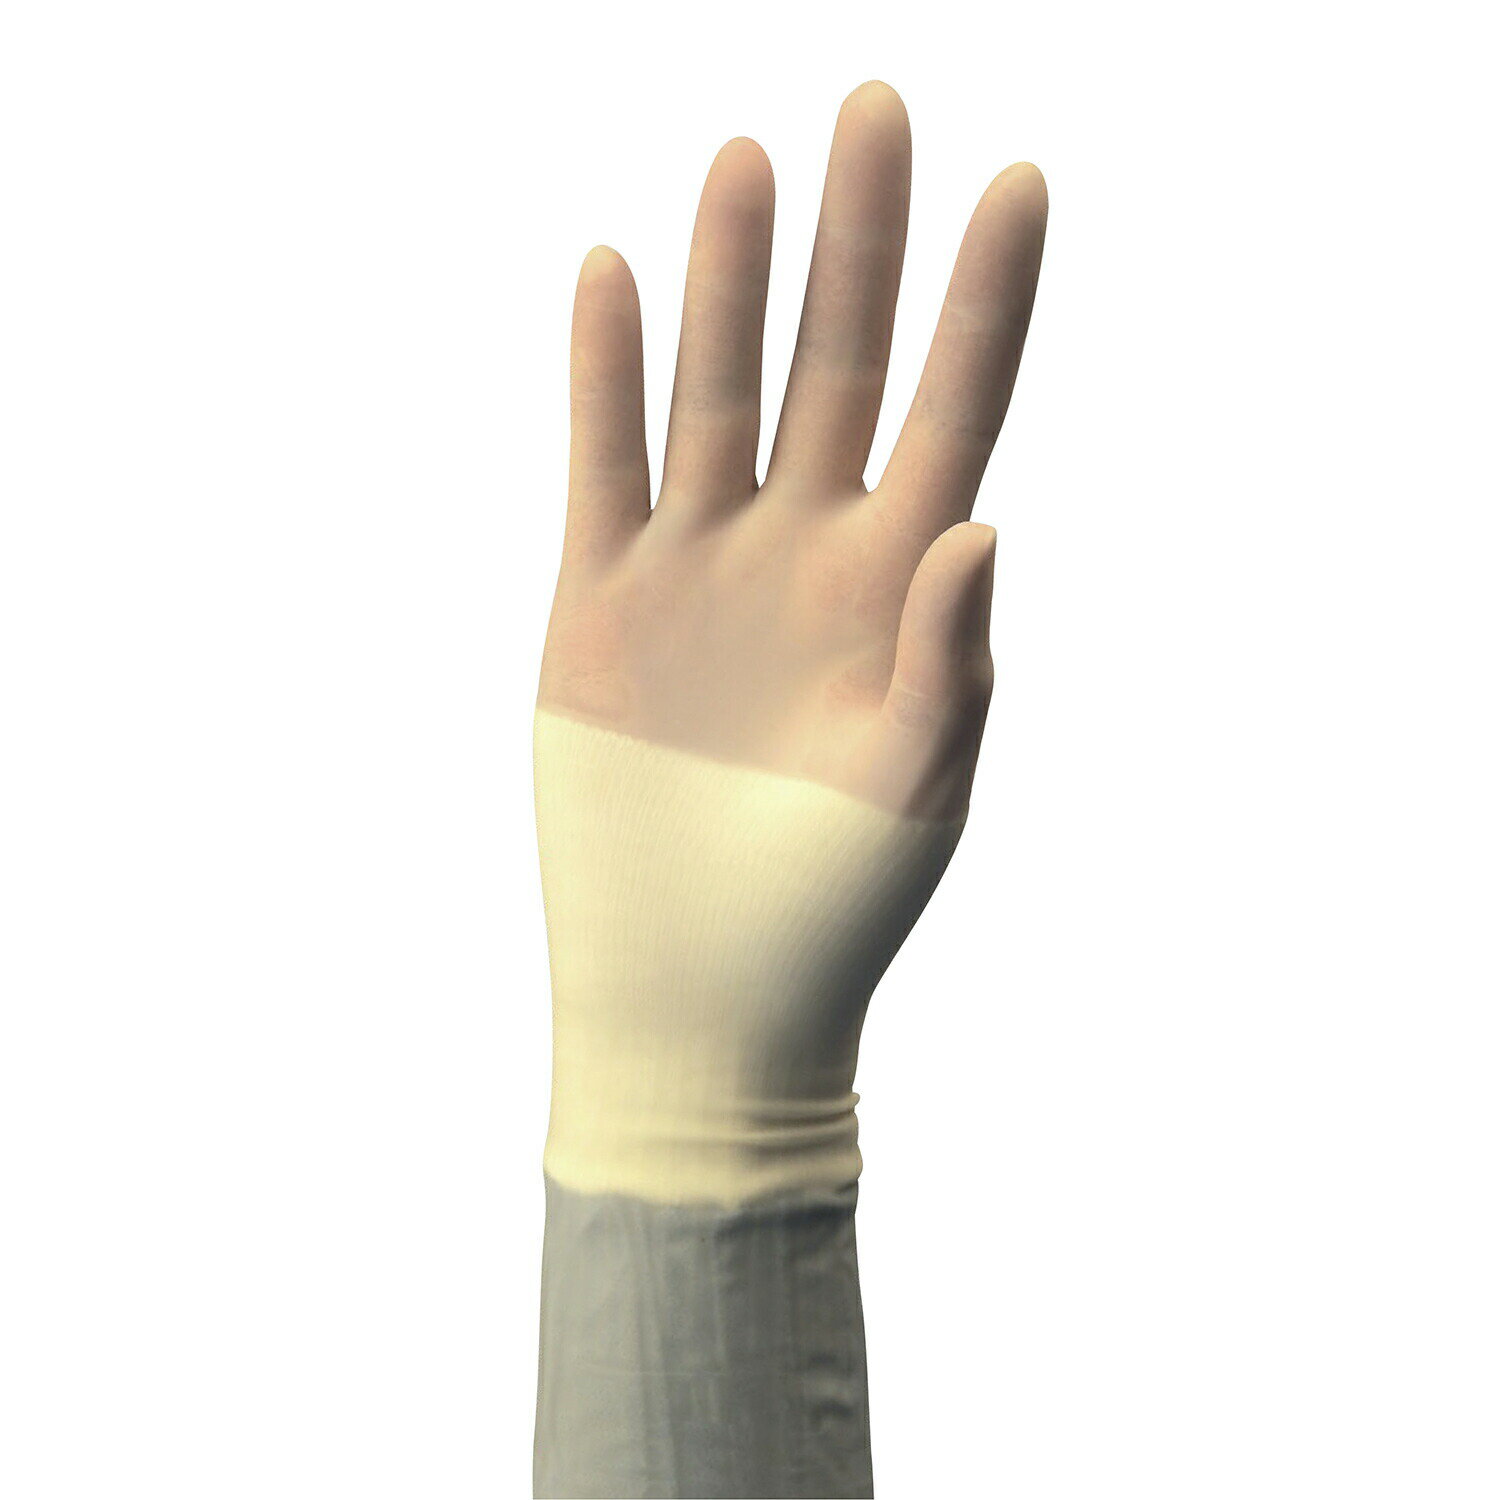 ●手にやさしい合成ゴム製手袋です。●あらゆる種類の症例で使用可能な設計です。●手袋の内側は、手荒れを防止する成分を配合しています。●袖口のめくれあがりを防止する加工を施しています。●親指や手のひらの動きを邪魔せず、疲労を感じさせない、手の解剖に基づくデザインです。●γ線滅菌済。●カラー：クリーム●サイズ：5.5●入数：50双●材質：ポリイソプレン（PI）ニューセラ?エモリエントコーティング承認・認証番号229ADBZI00090000松吉医科器械｜総合カタログ｜医療・介護・ドクター・ナース